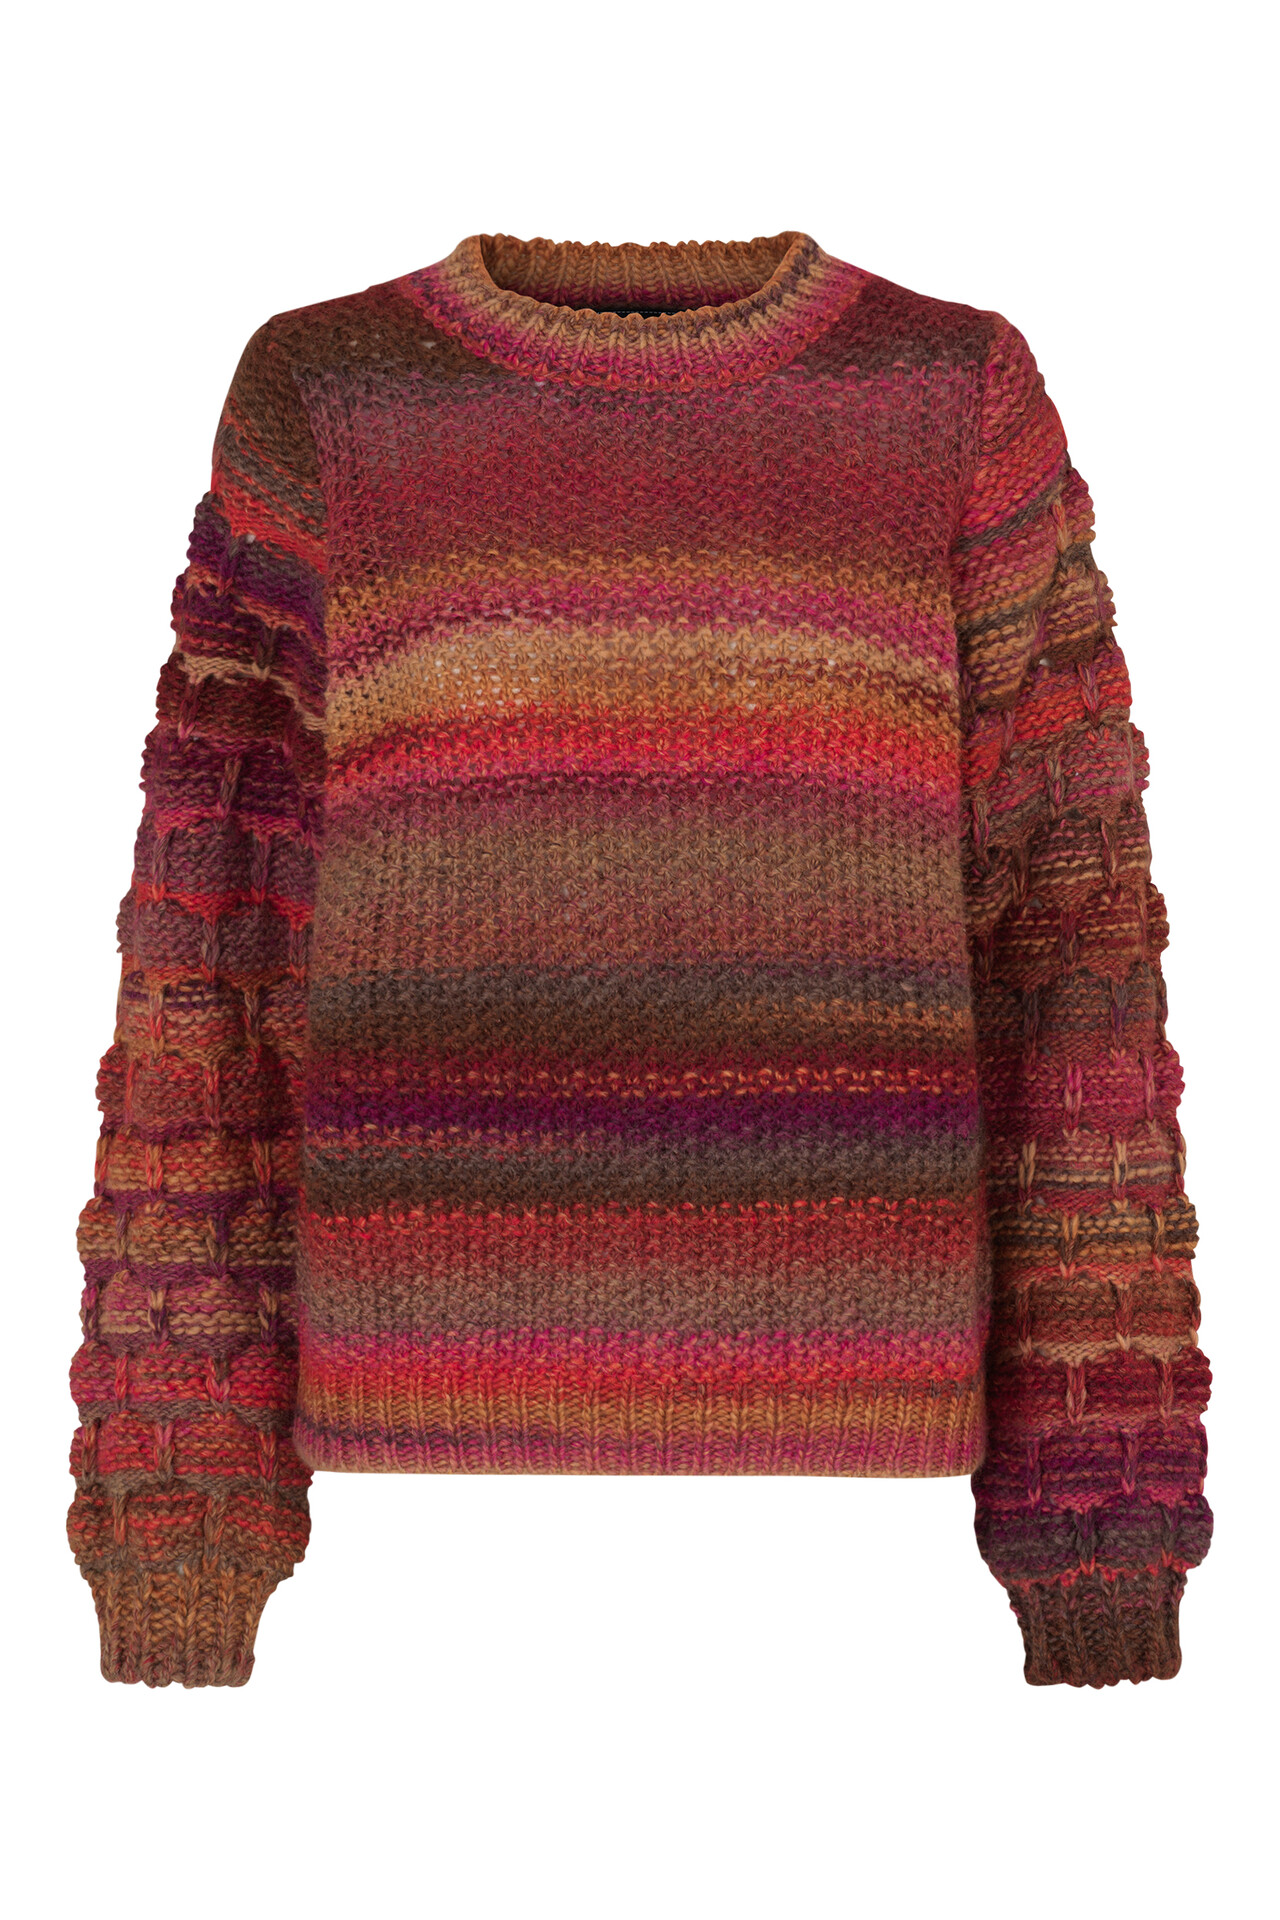 CRÉTON Bumble sweater (RØD L) (5707900550028) Køb online DKK